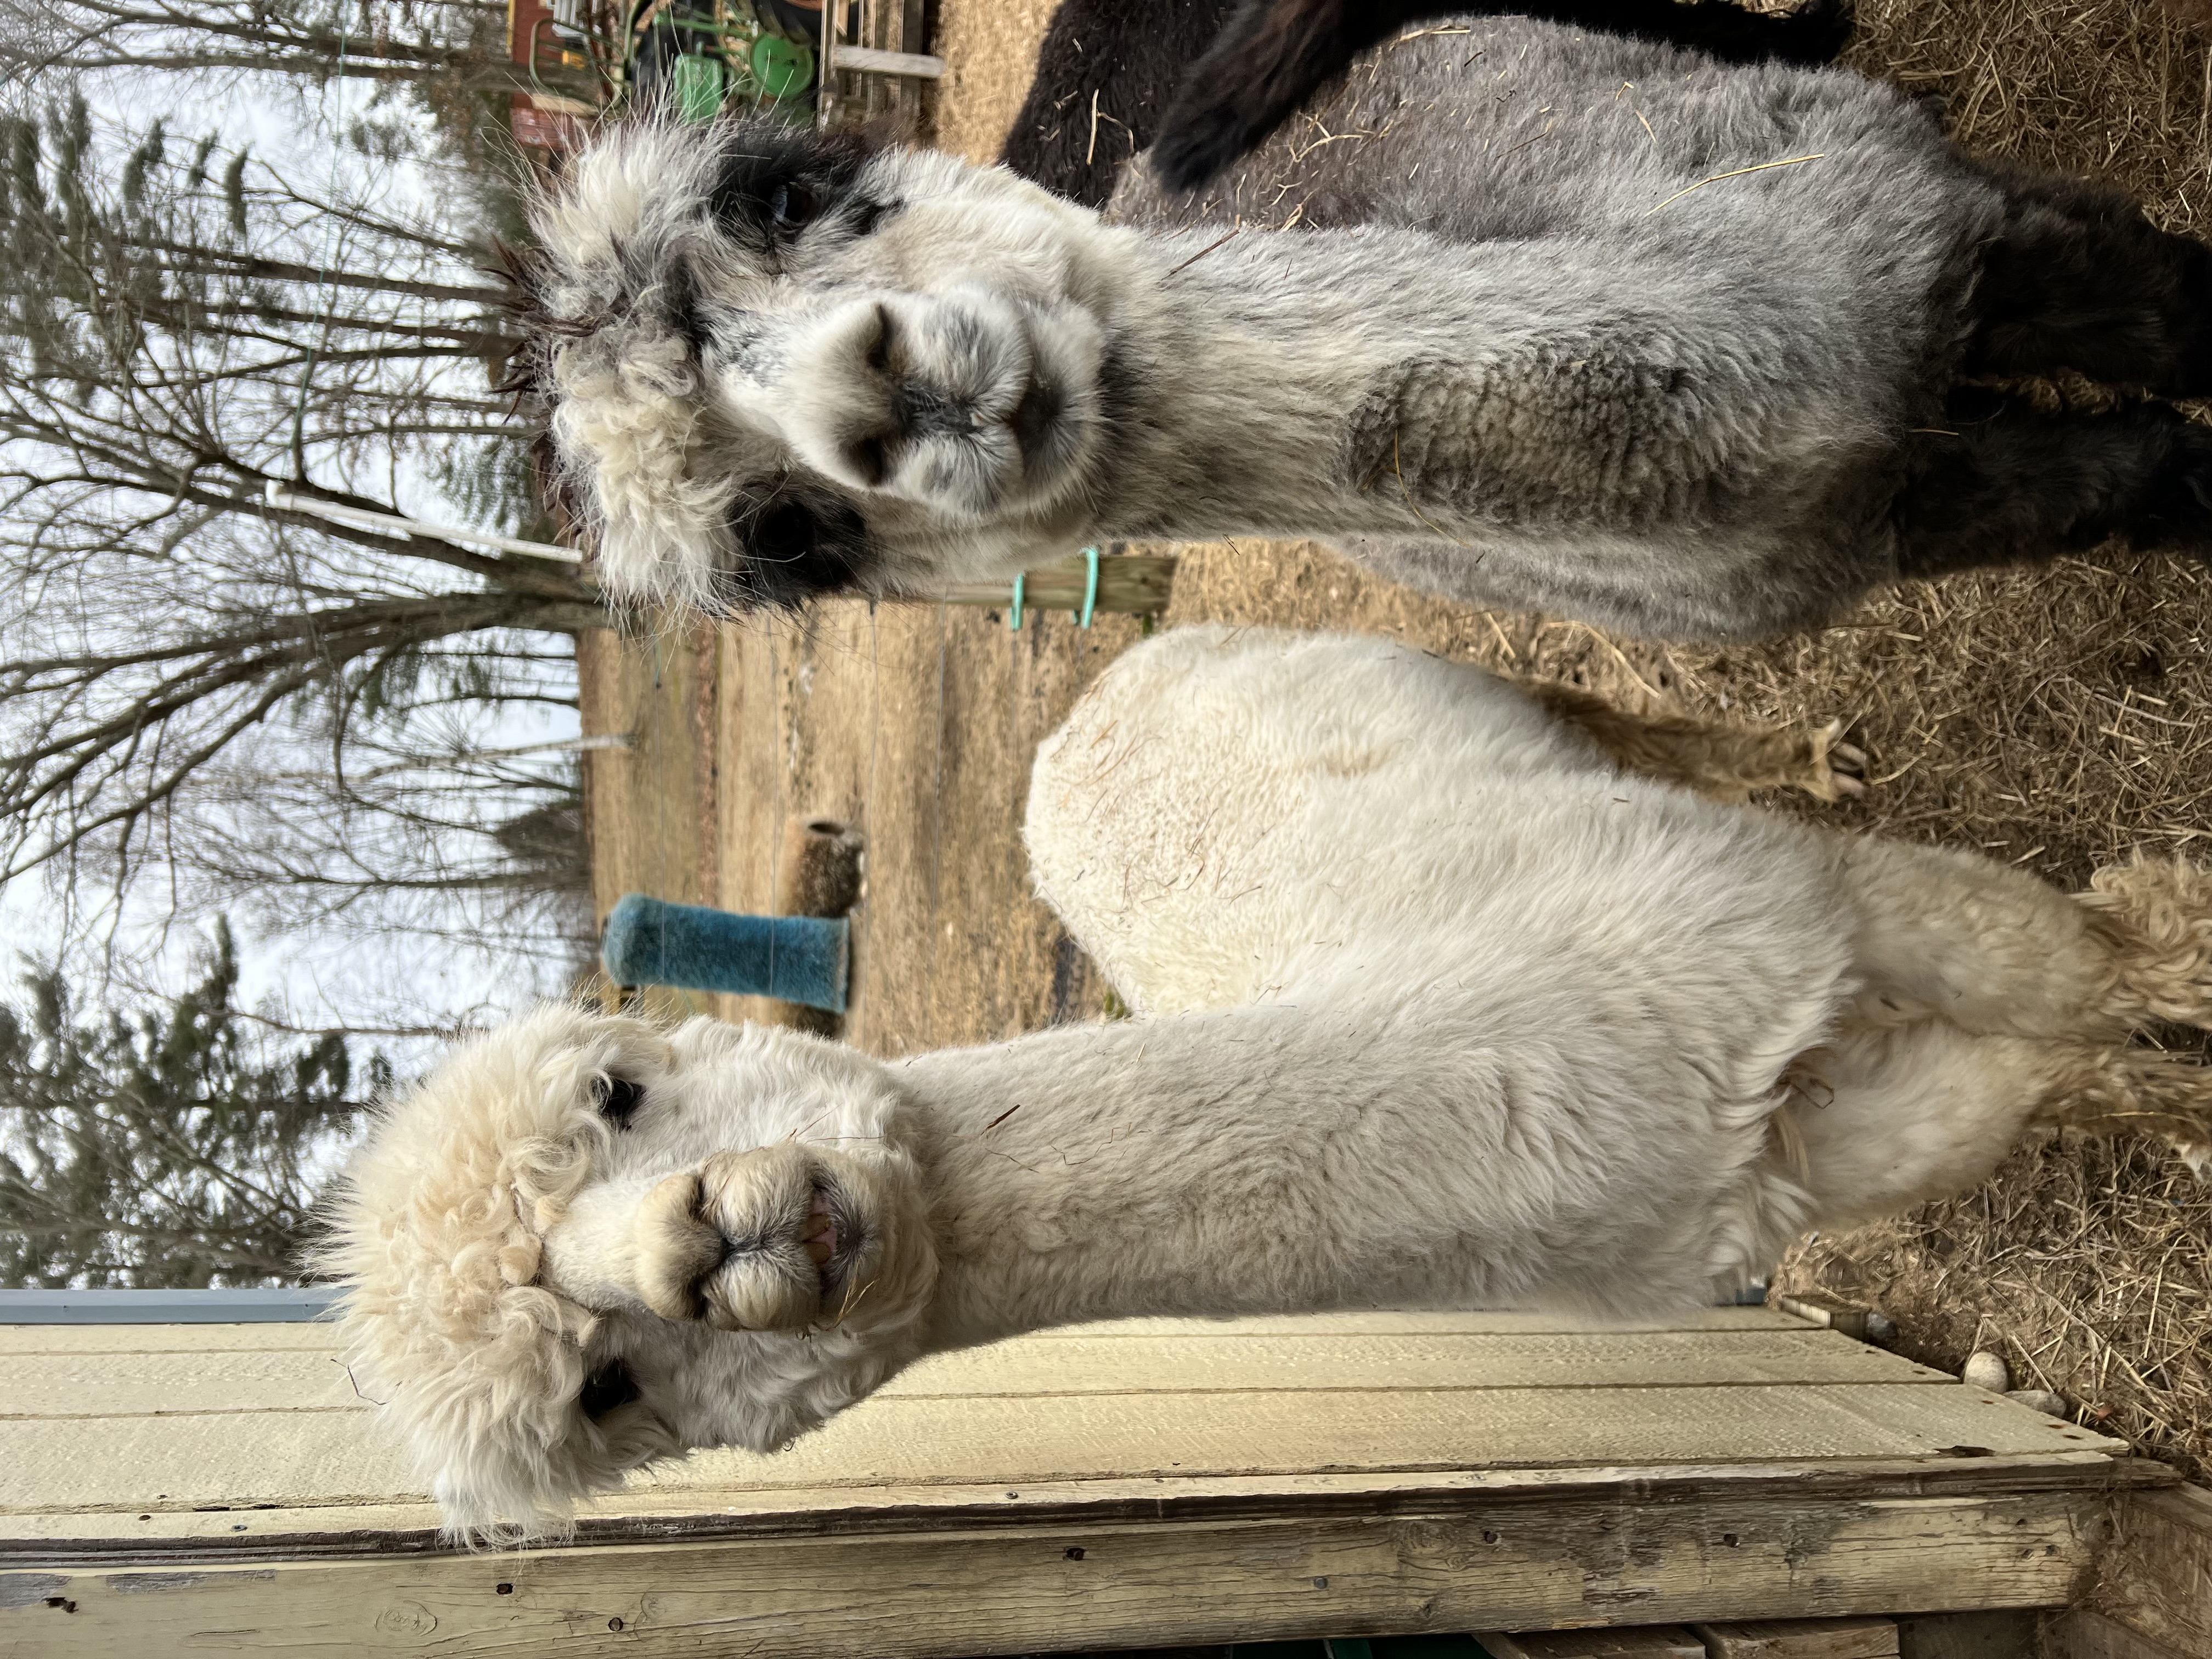 Two alpacas